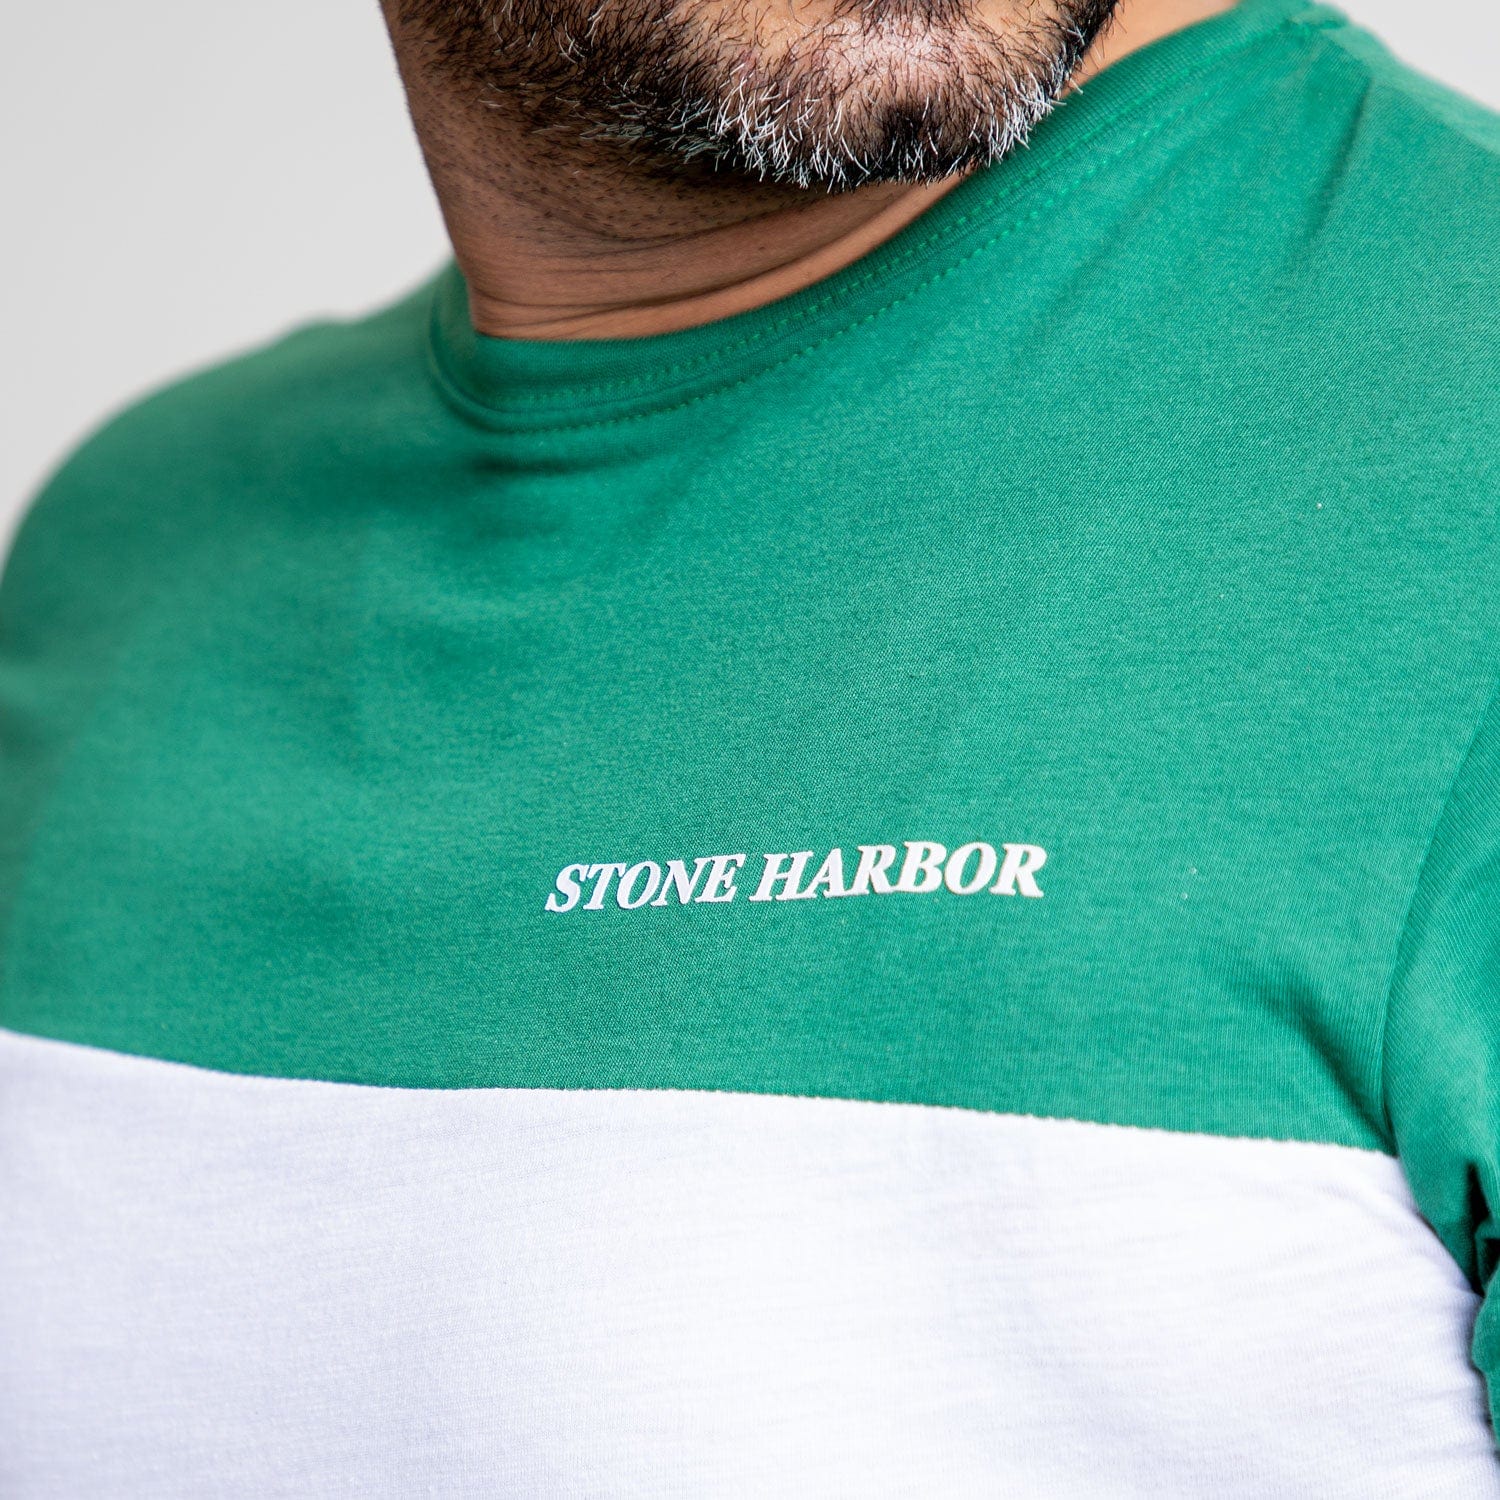 Stone Harbor Men's Tee Shirt MEN'S TRENDY CONTRAST PANELS TEE SHIRT